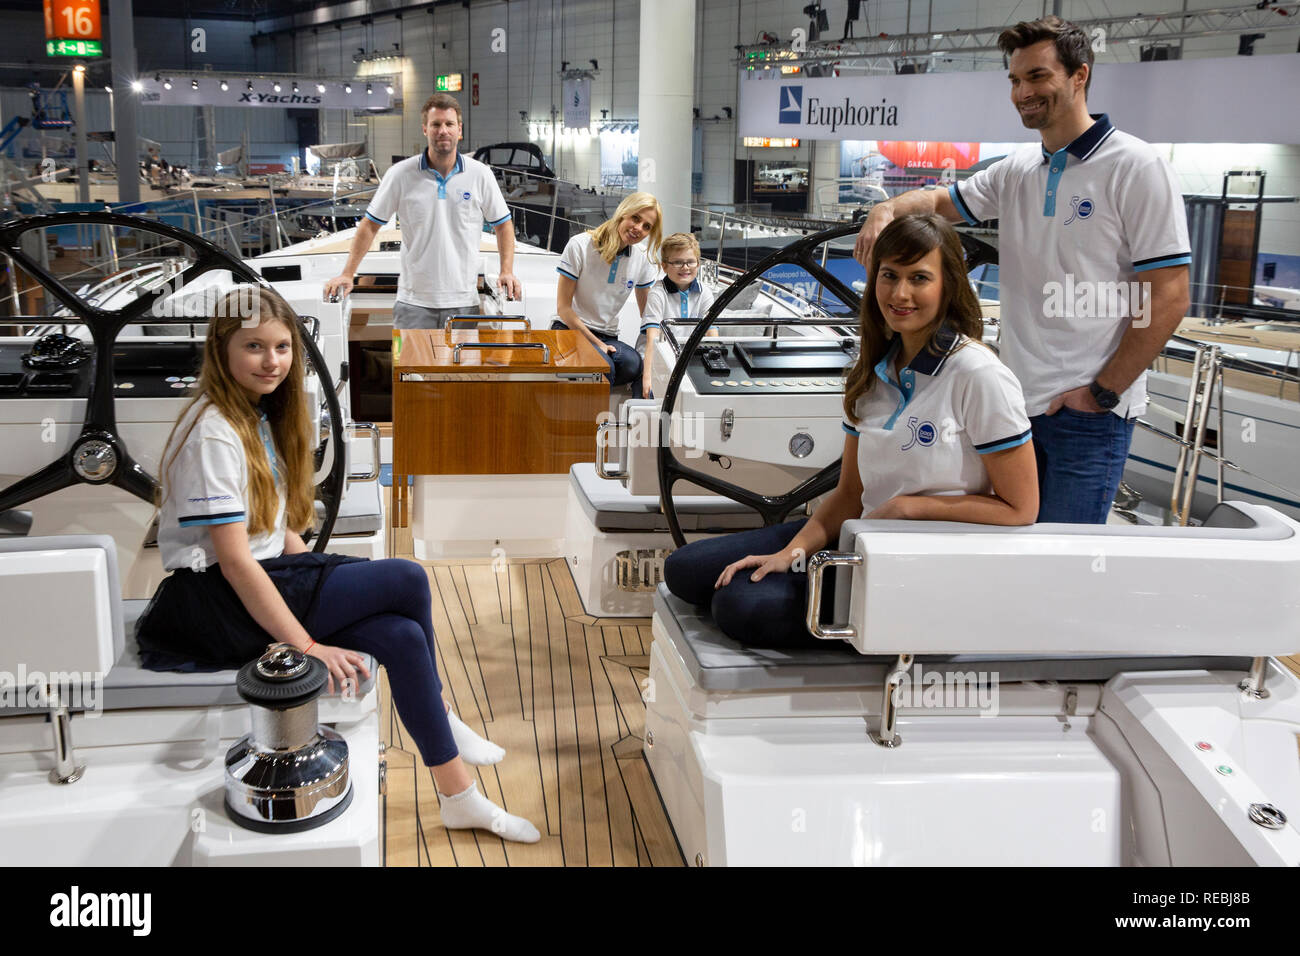 Segelyacht 'Oyster 675' auf der 50. Wassersportmesse 'boot', Düsseldorf, 18.01.2019 Stock Photo